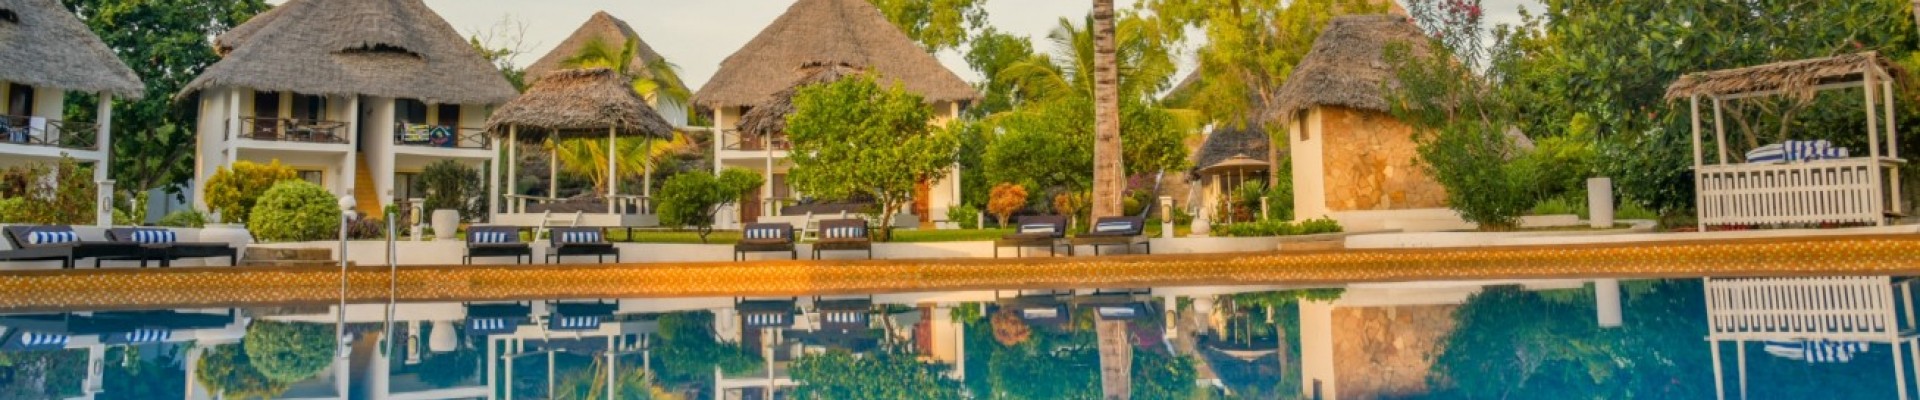 3* Filao Beach Resort and Spa - Zanzibar Package (5 Nights)